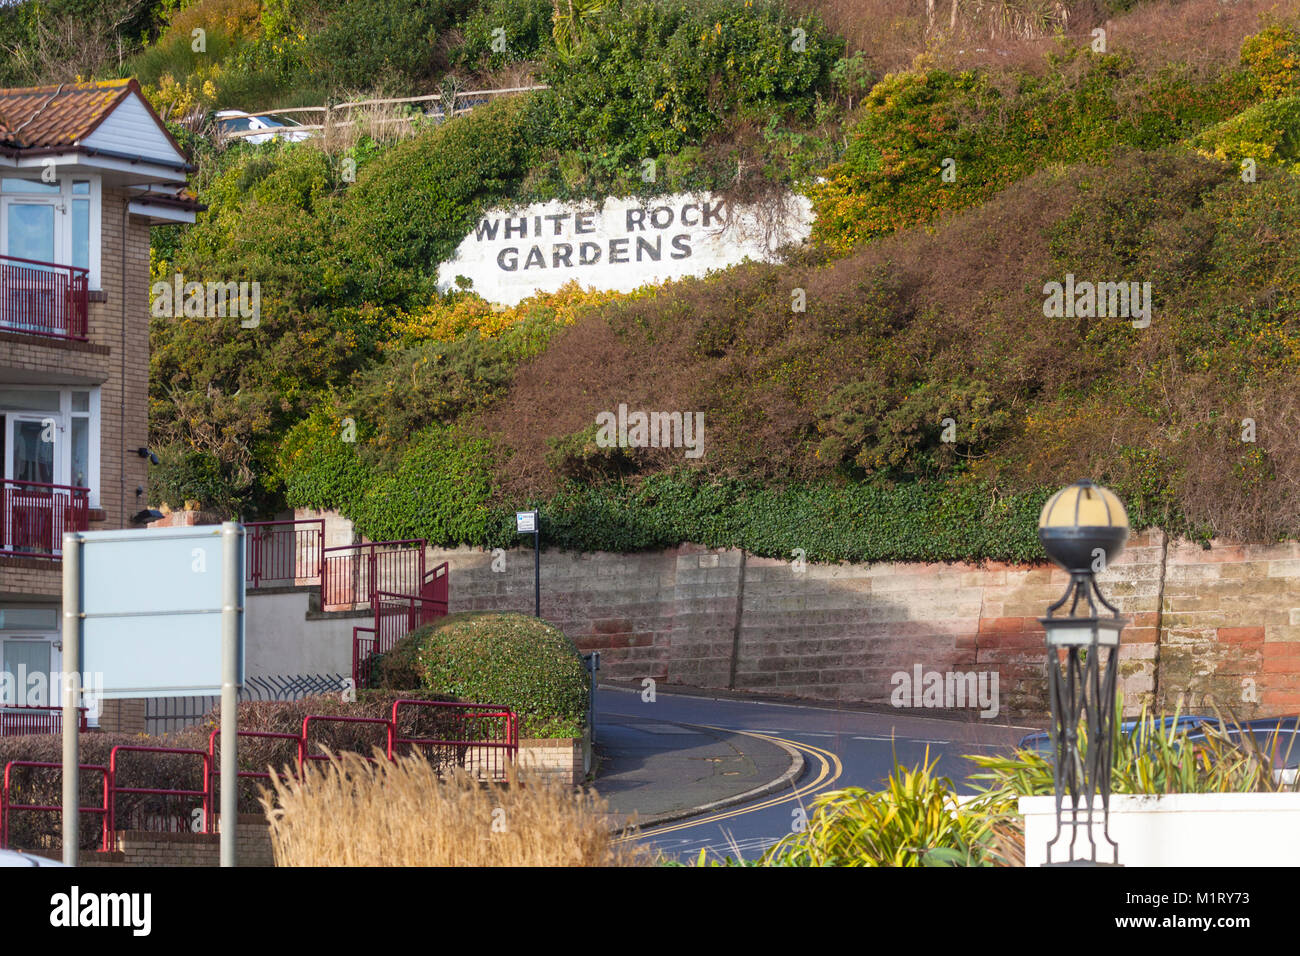 White Rock gardens Beschreibung auf Wand, East Sussex, Großbritannien Stockfoto